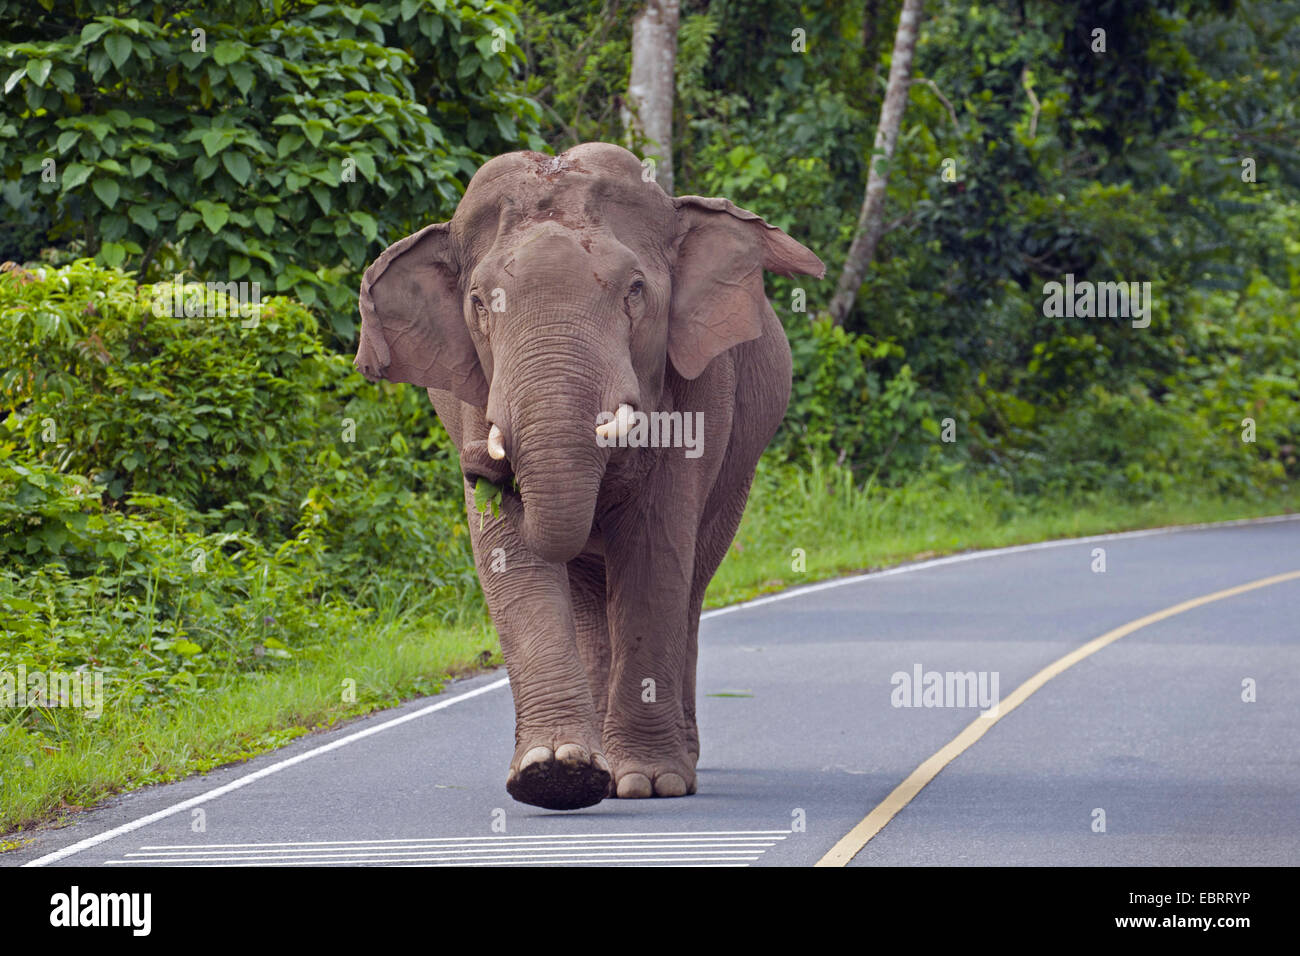 L'éléphant d'Asie, l'éléphant d'Asie (Elephas maximus), homme sur une route, la Thaïlande, le parc national Khao Yai Banque D'Images